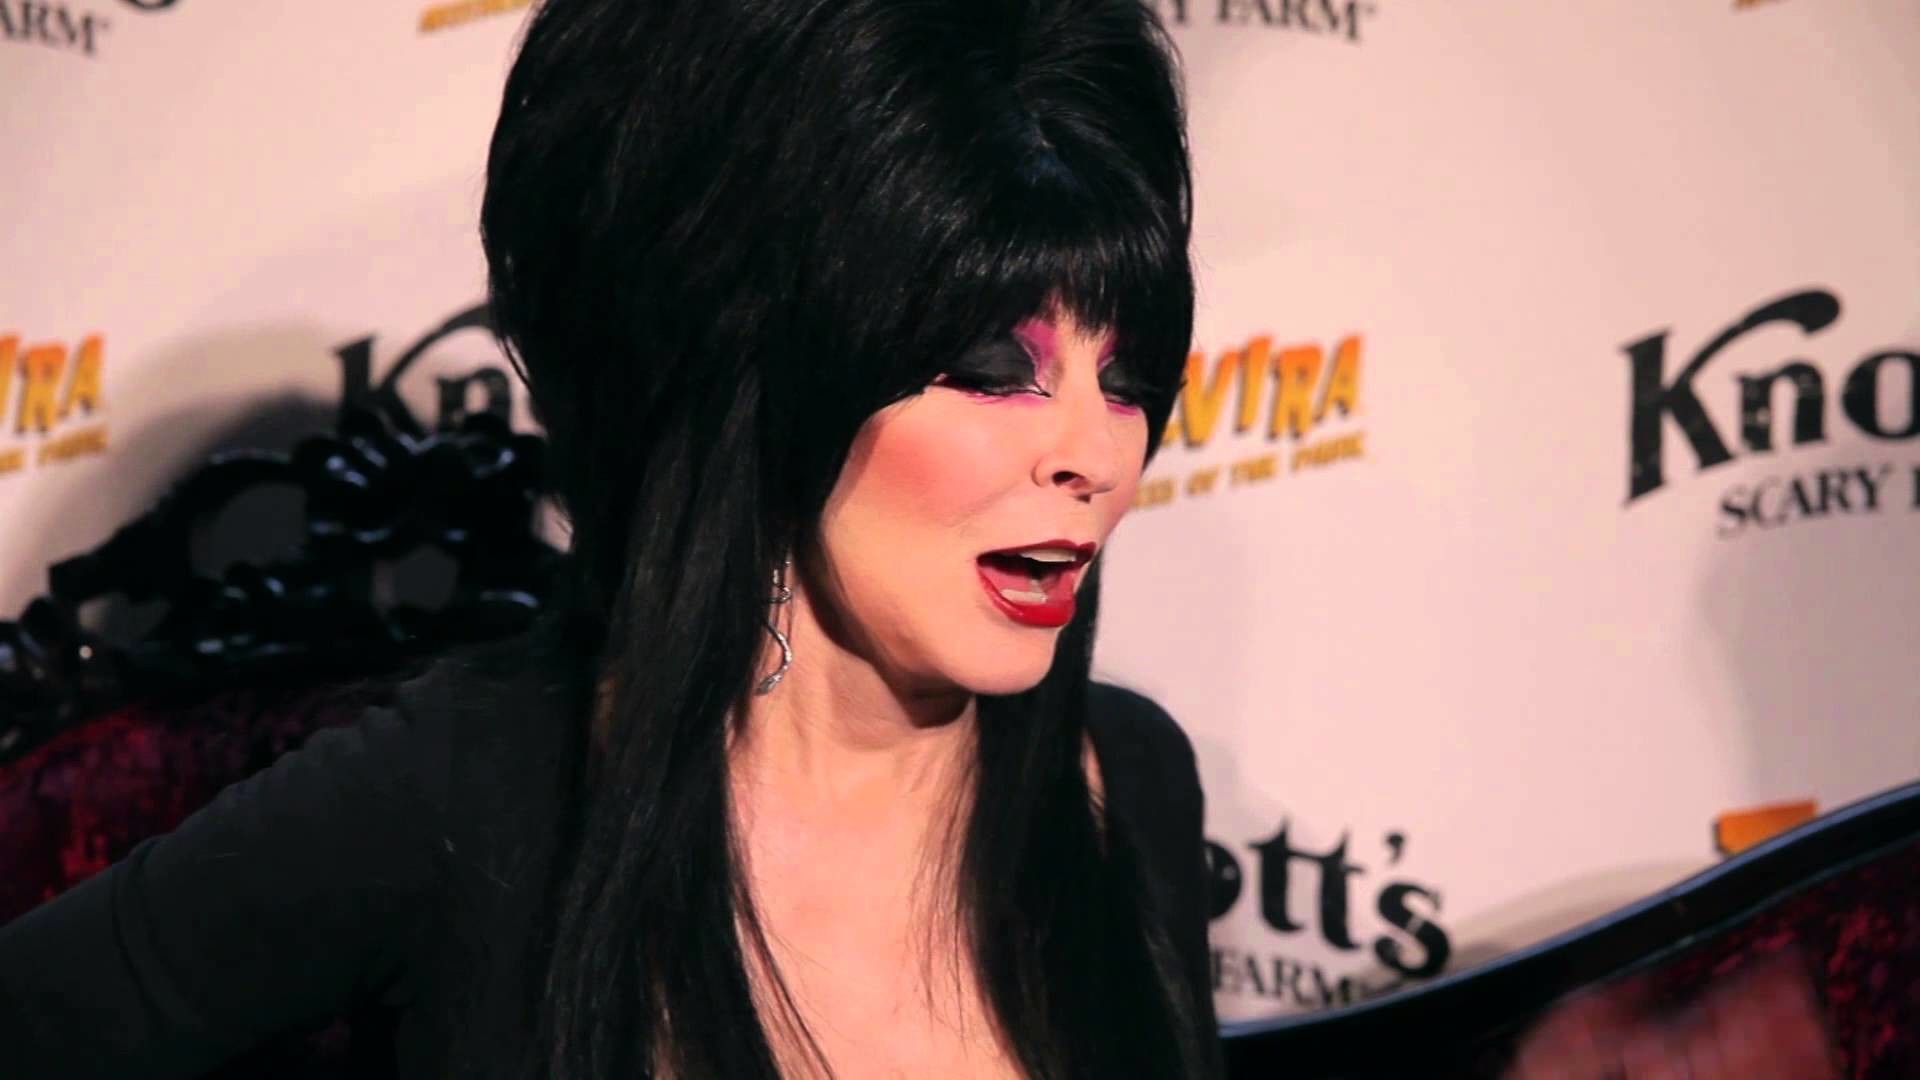 Elvira Mistress Of The Dark Talks New Knotts Scary Farm 2014 Show – YouTube